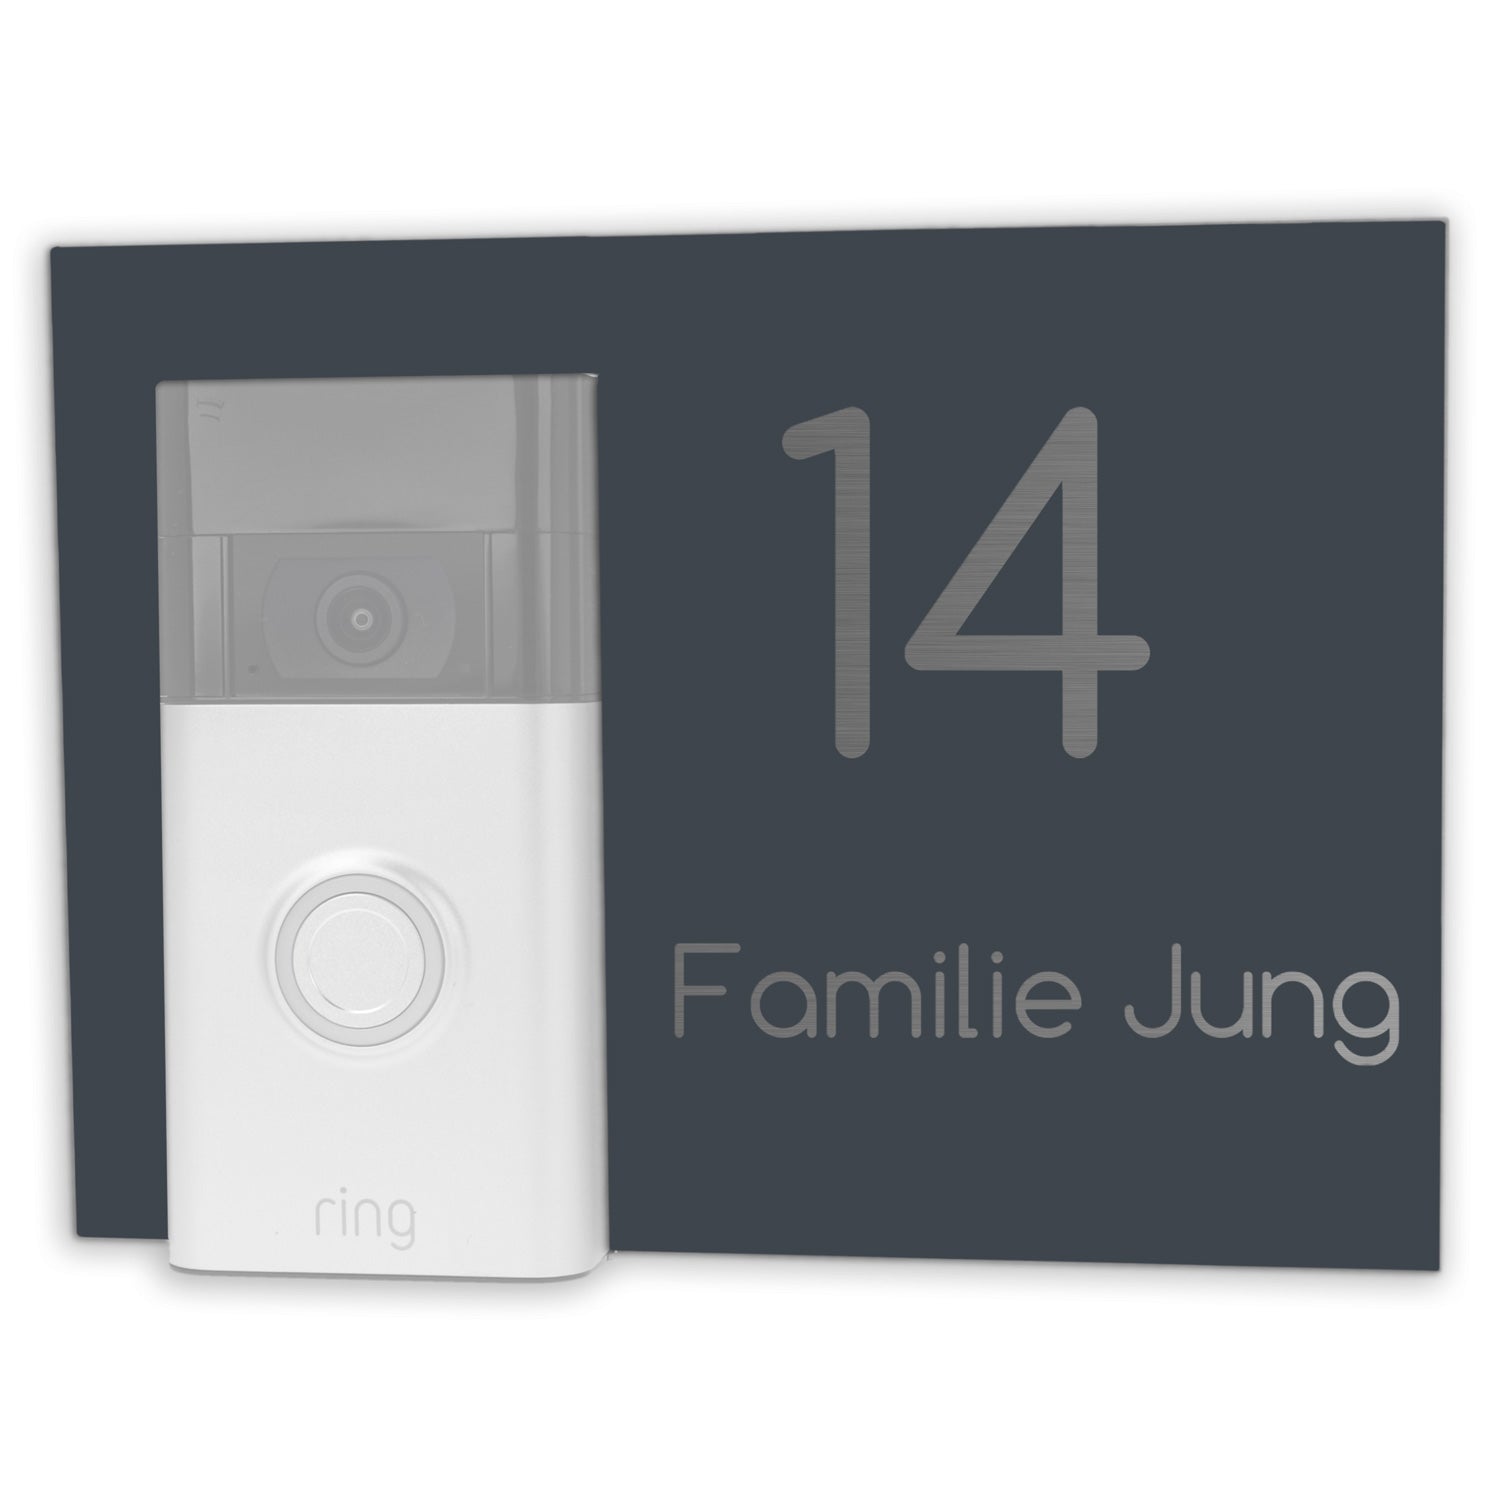 Edelstahl Türschild für Ring Doorbell 2,3,4 anthrazit RAL7016 pulverbeschichtet